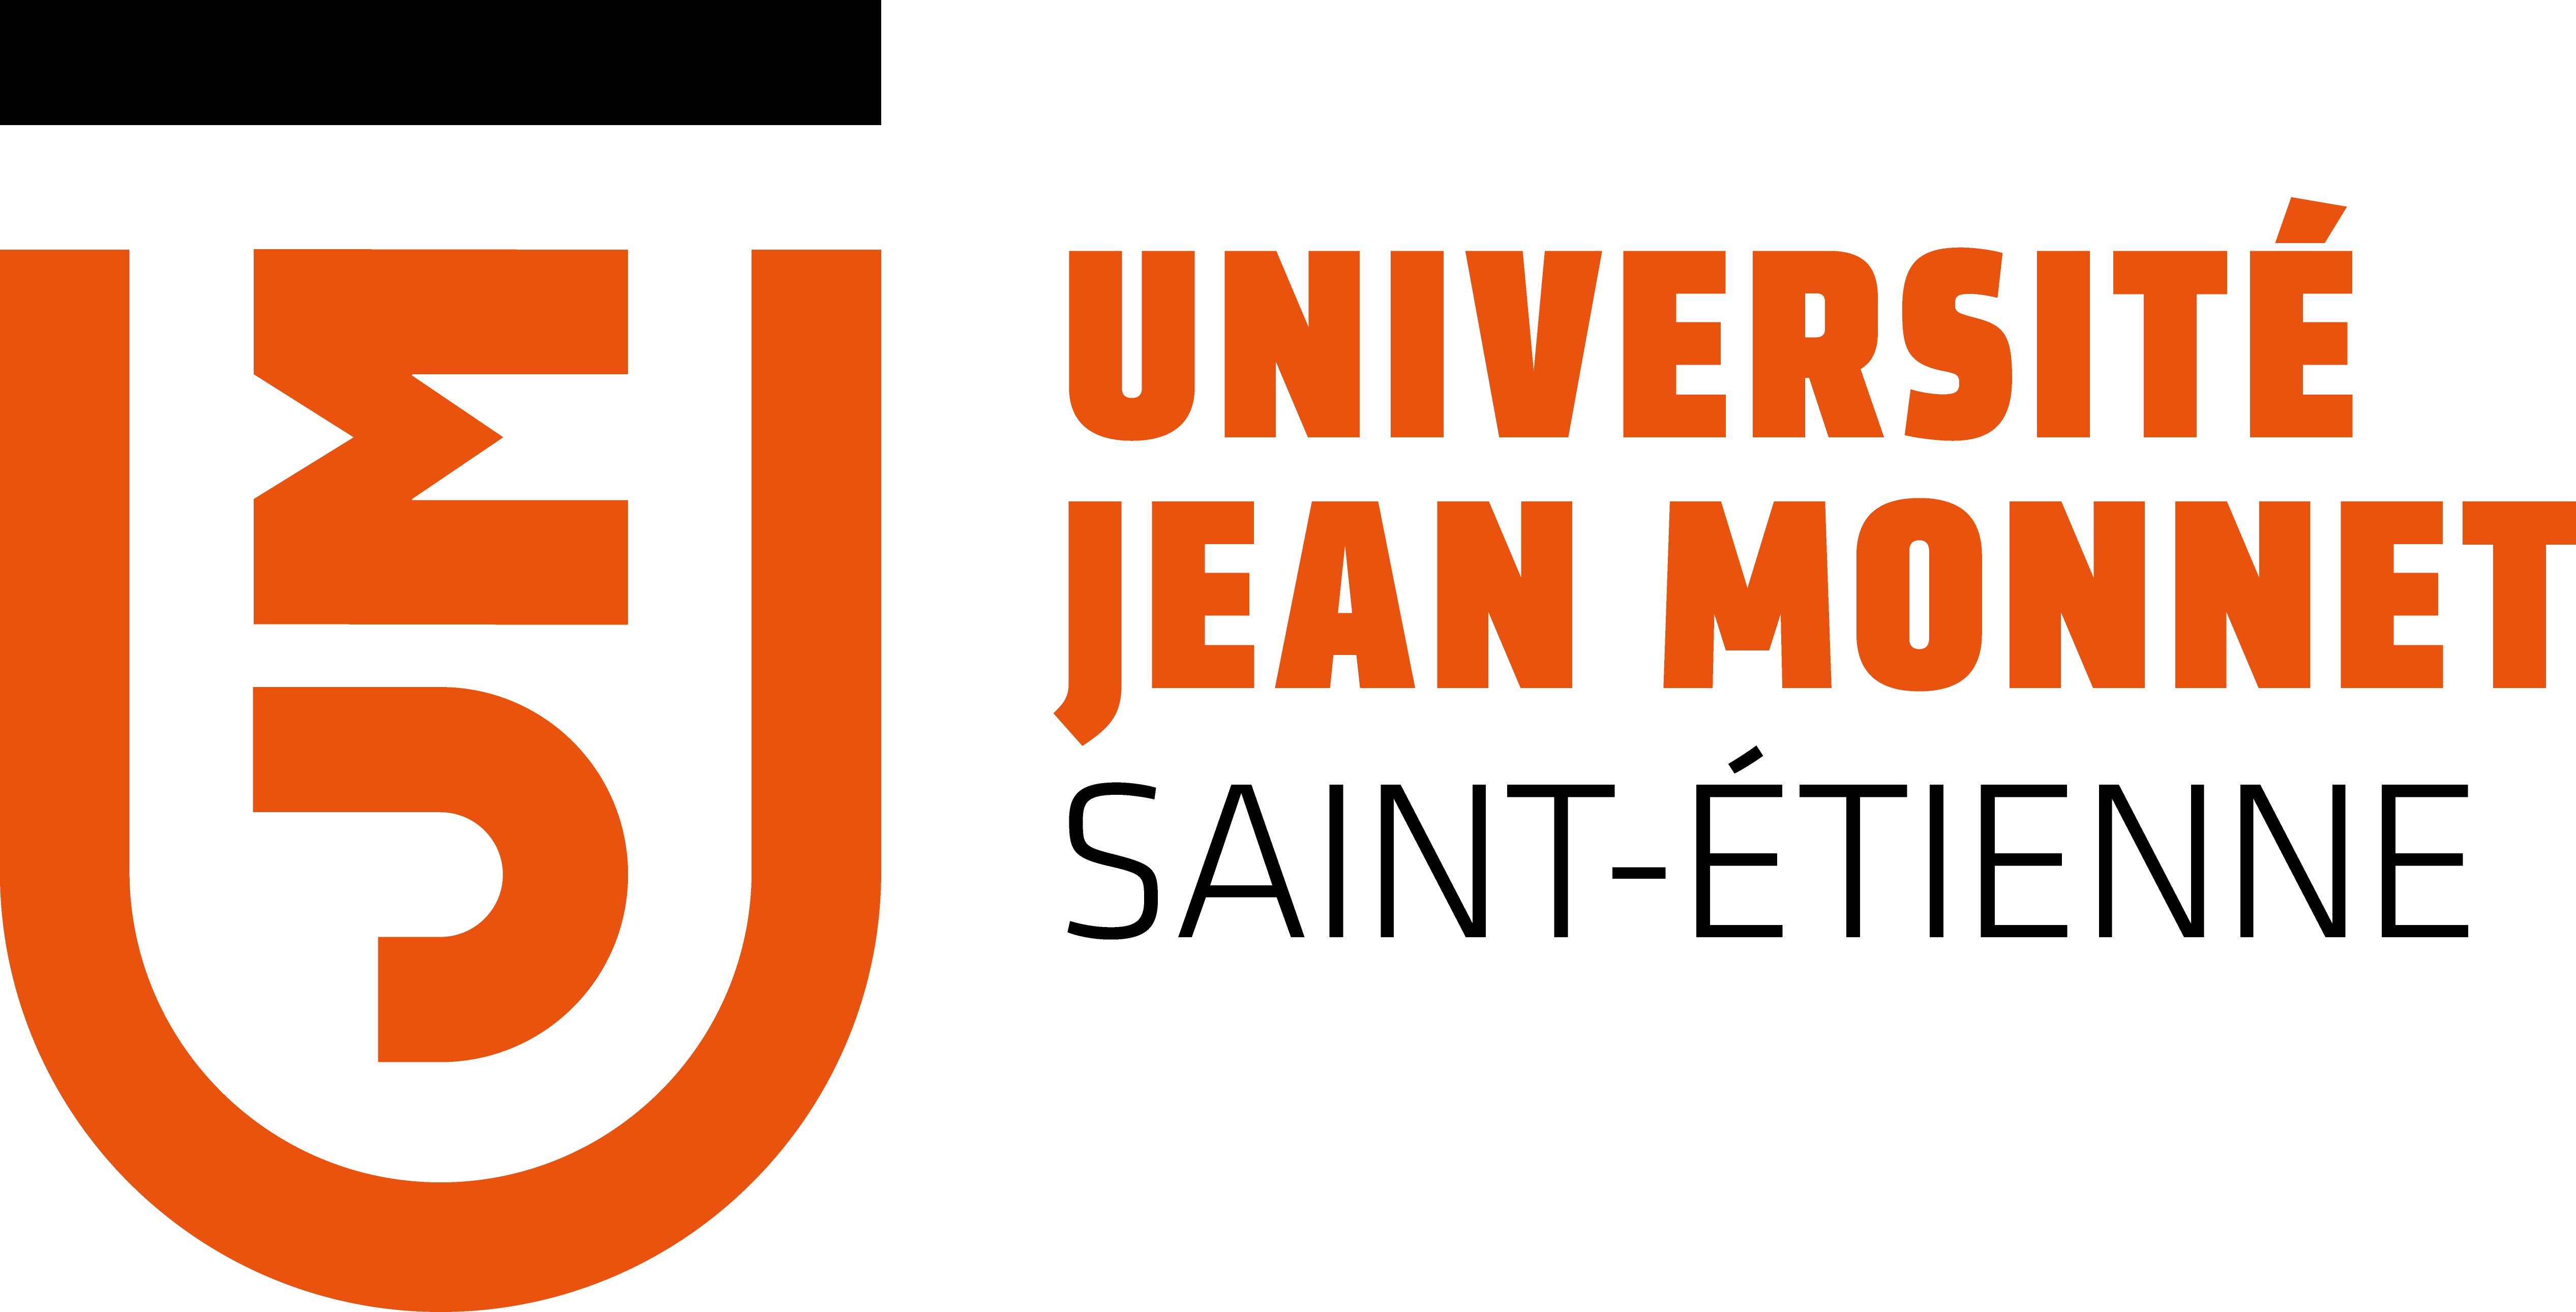 https://fetedulivre.saint-etienne.fr/wp-content/uploads/2018/08/UNIVERSITE-JEAN-MONNET.png